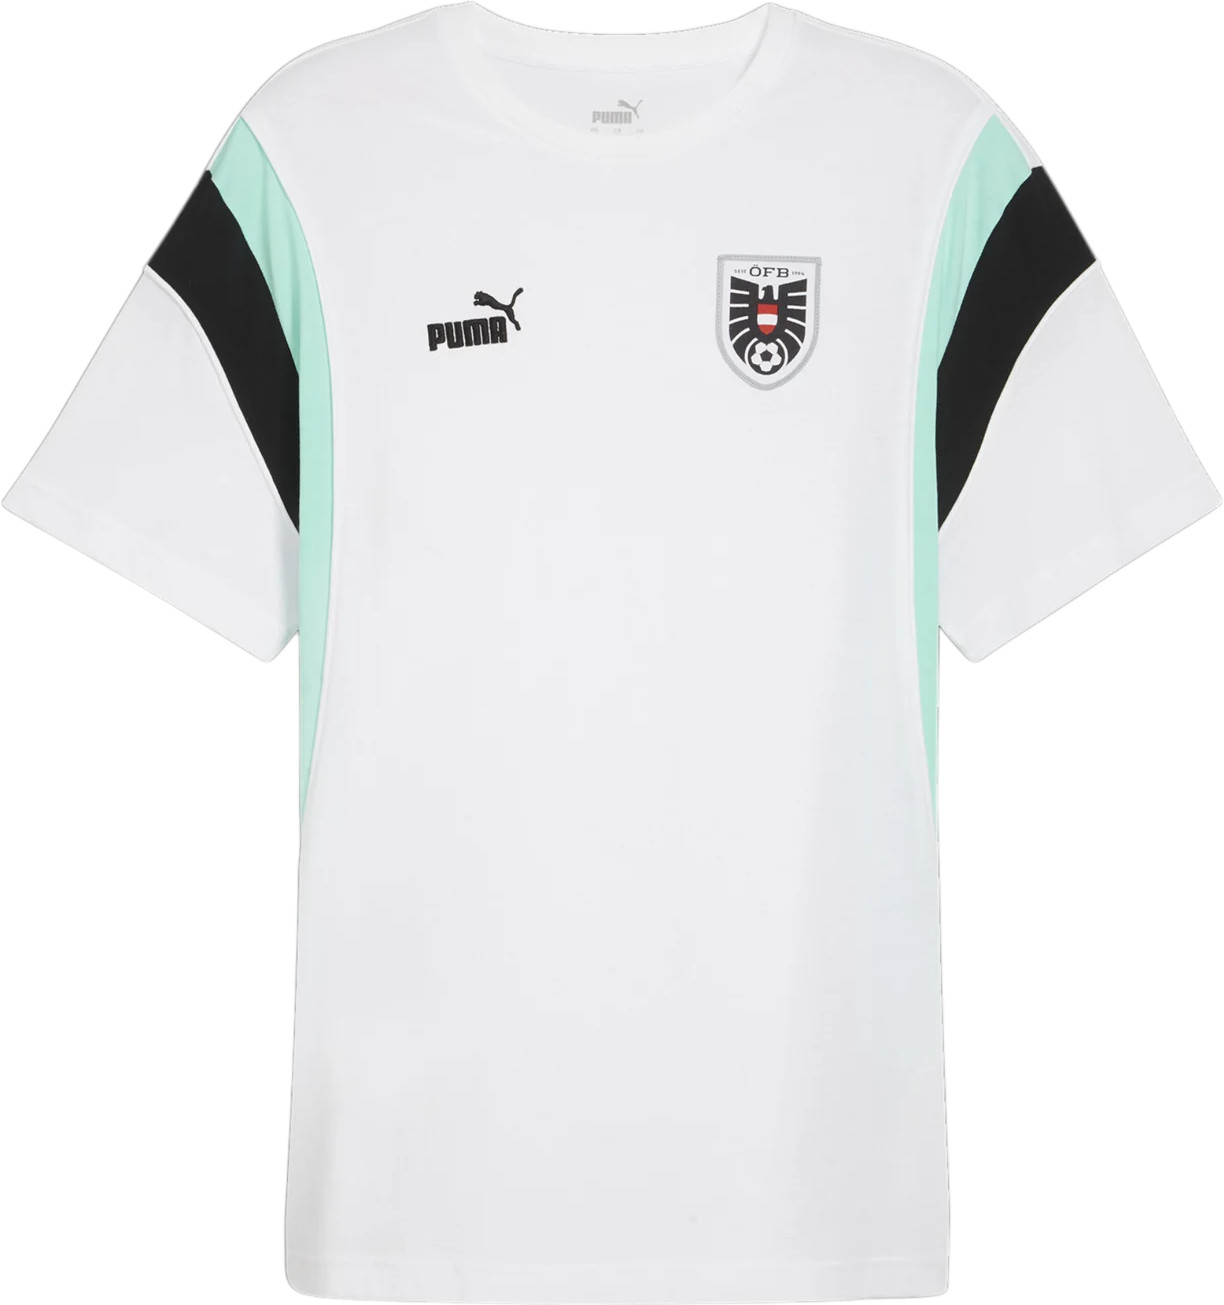 Pánské tričko s krátkým rukávem Puma Rakousko FtblArchive